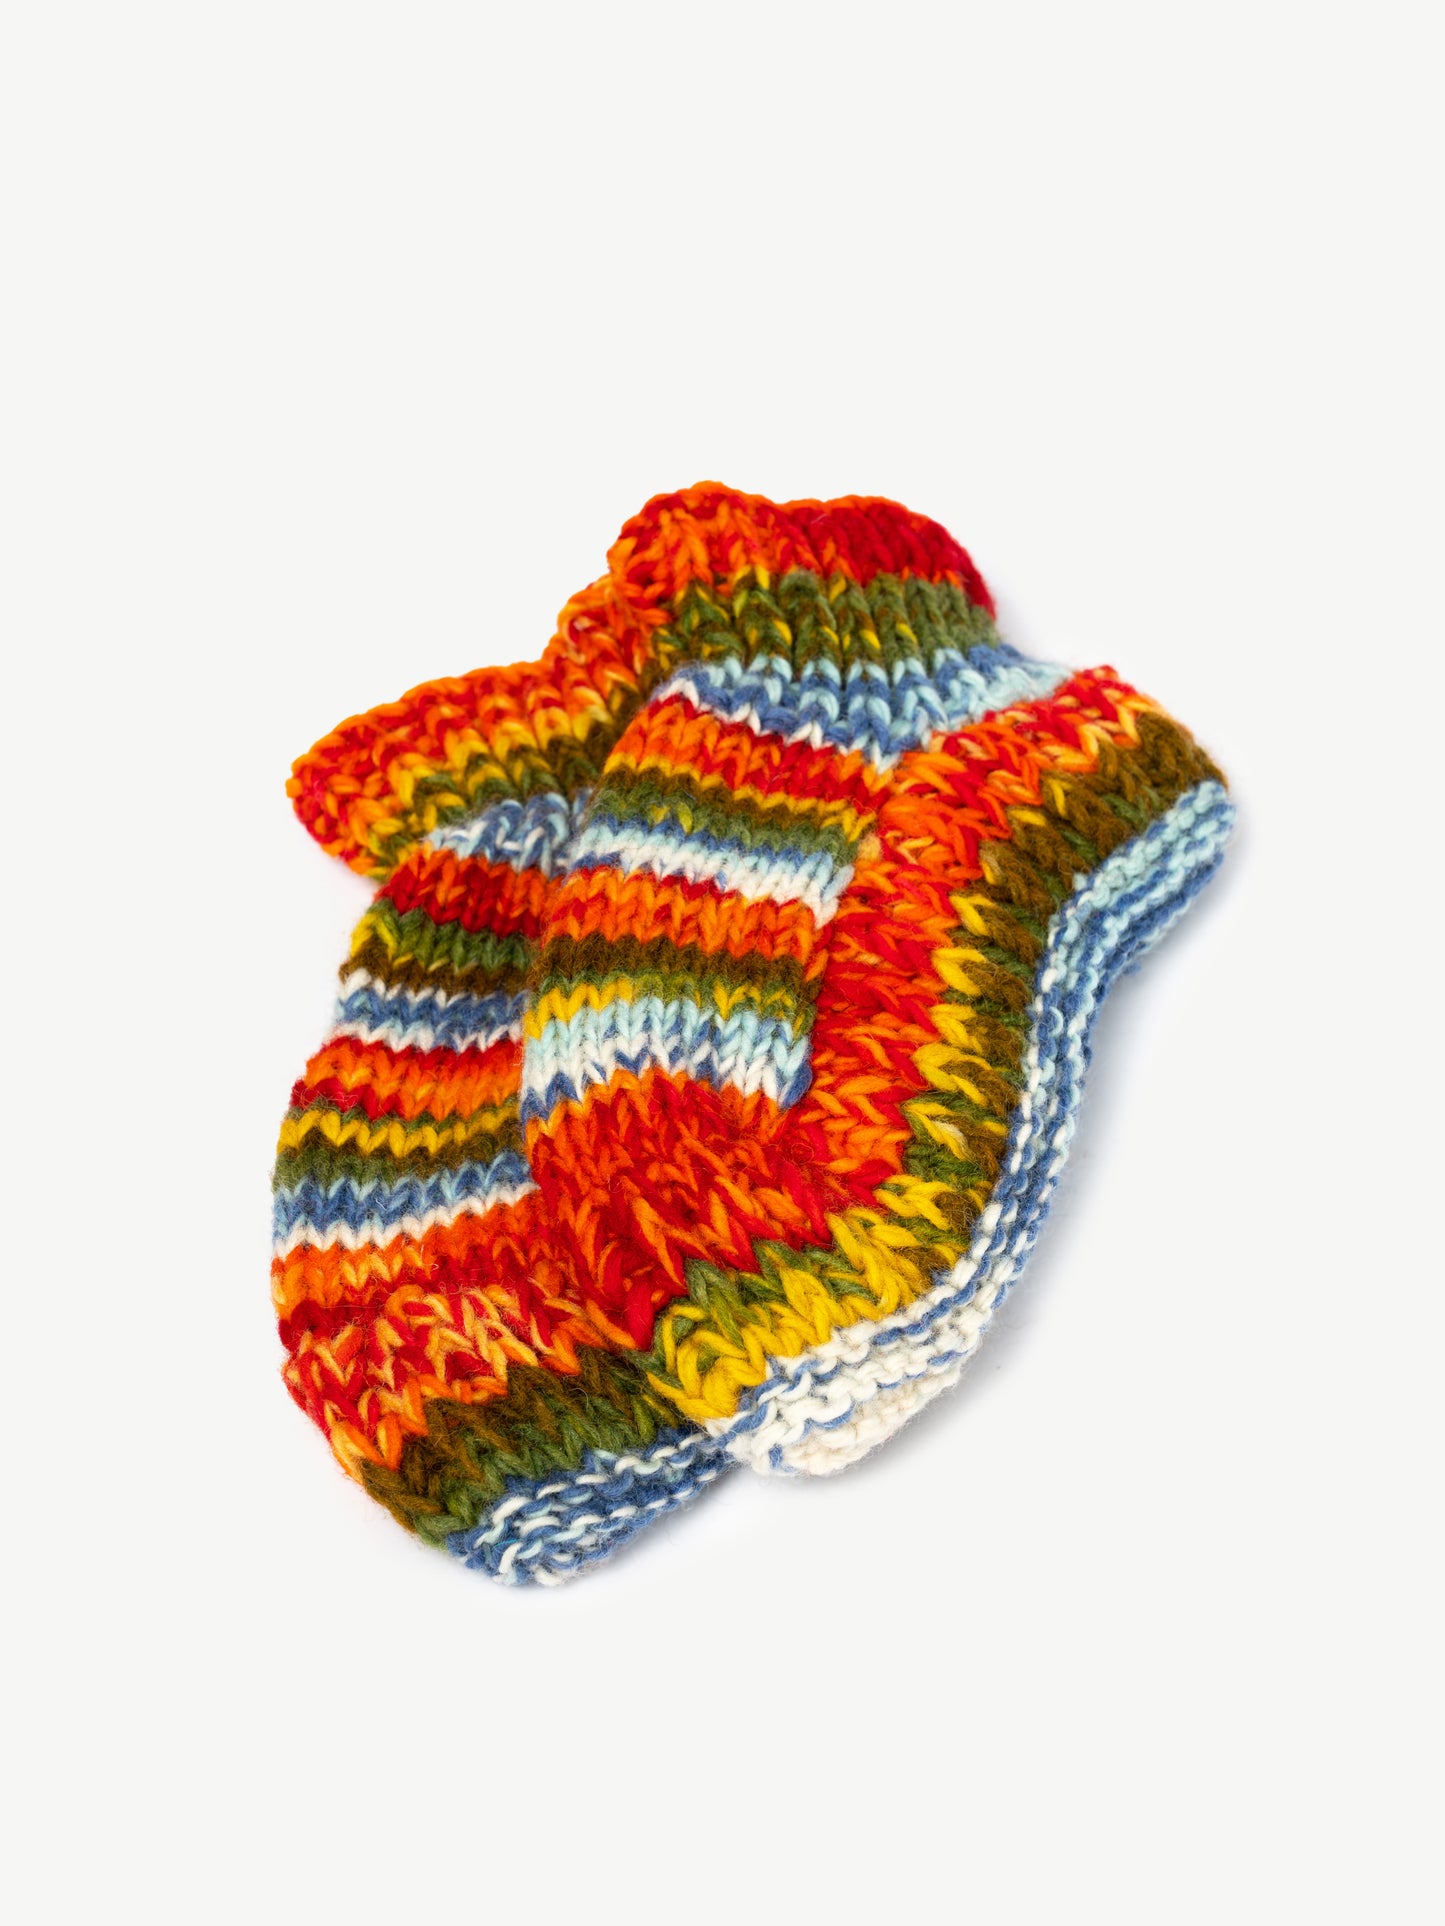 Warm Multicolored Woolen Socks